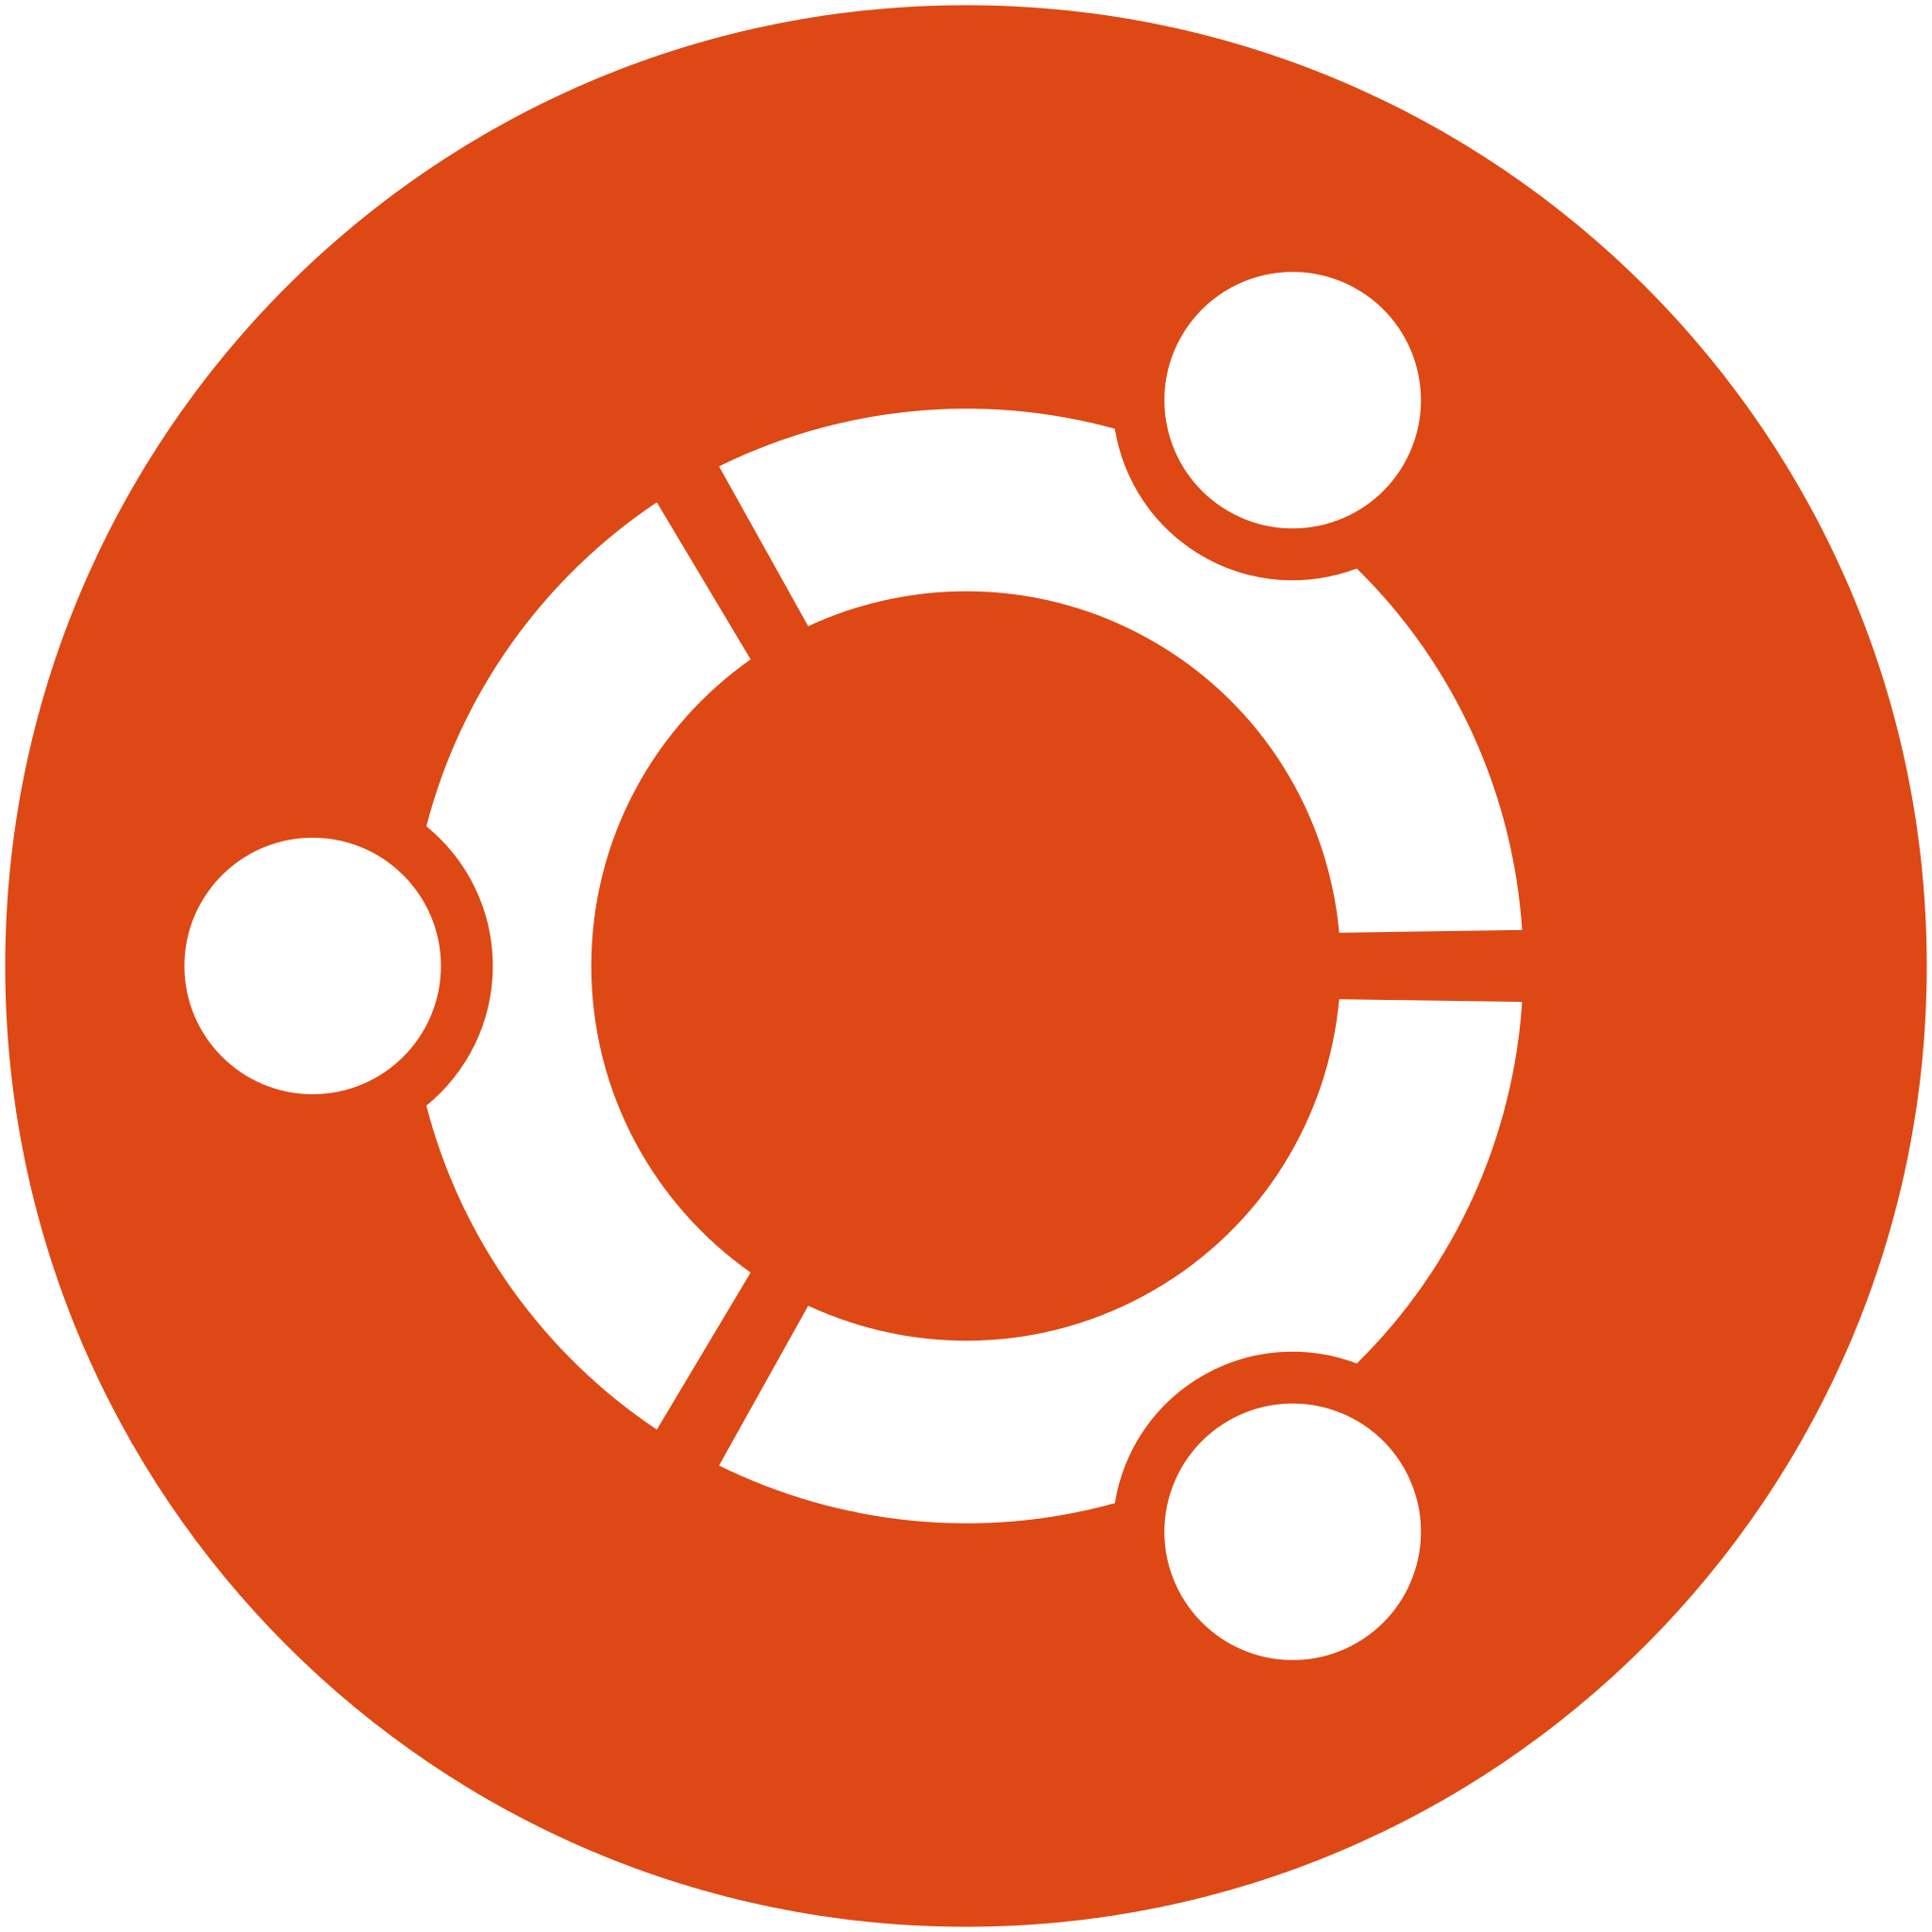 Ubuntu Linux OS